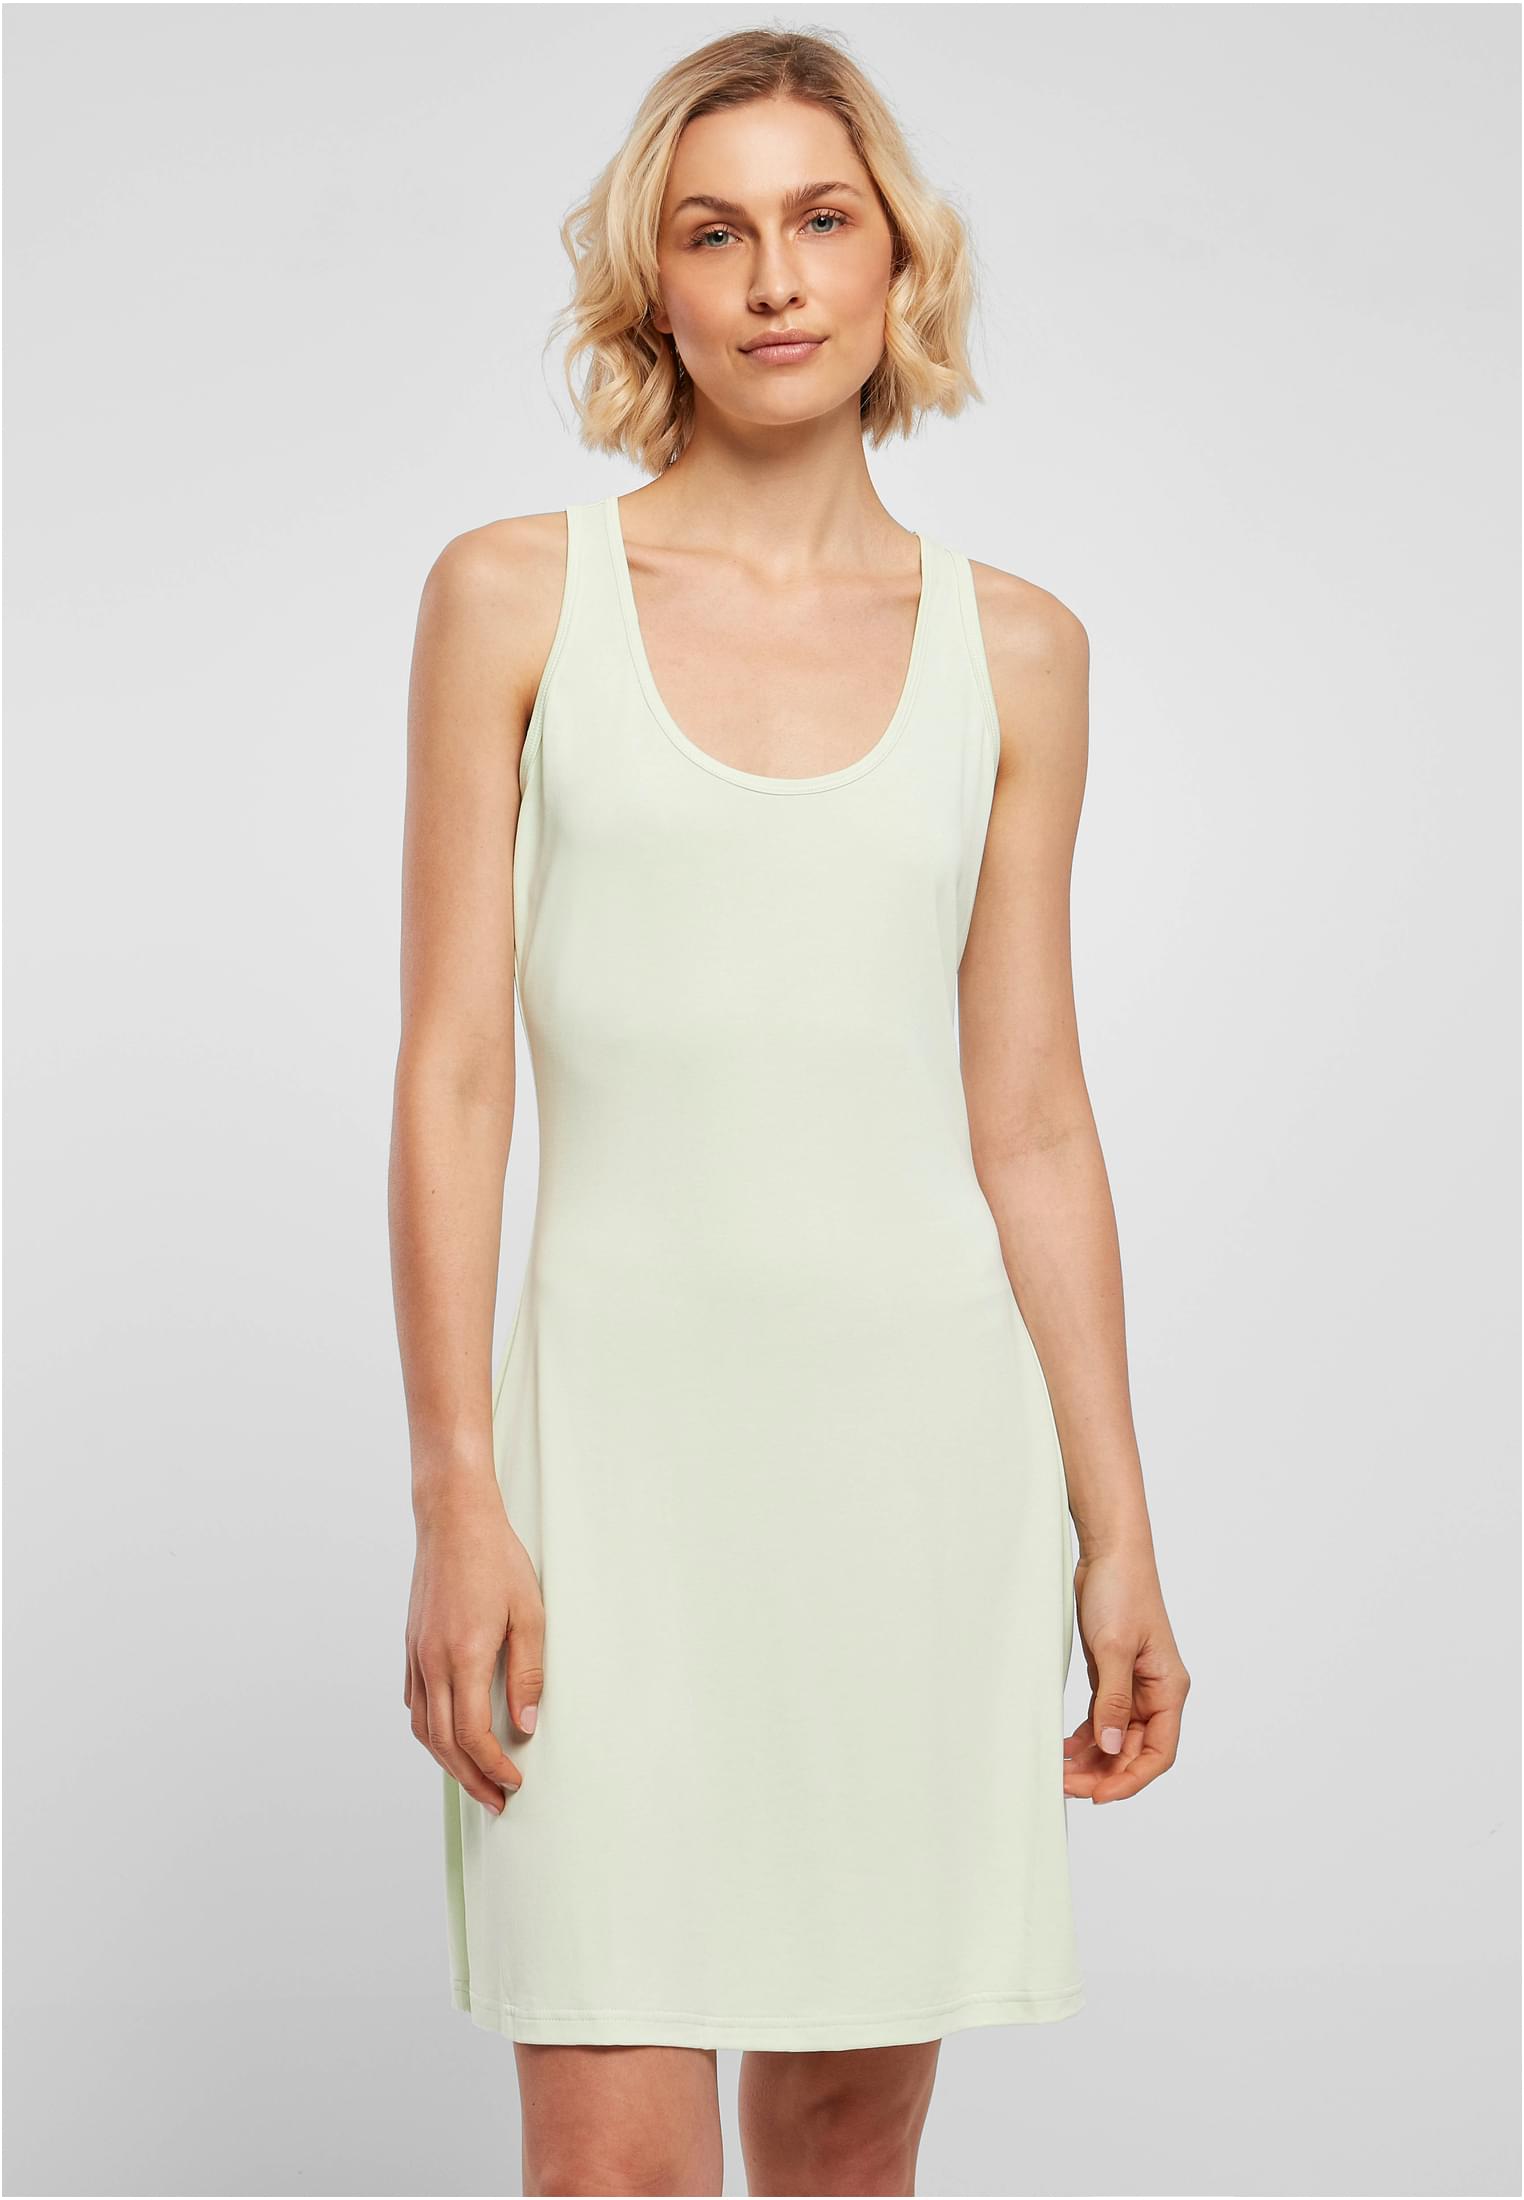 Women's Modal Short Dress with Back Shirts Light Mint